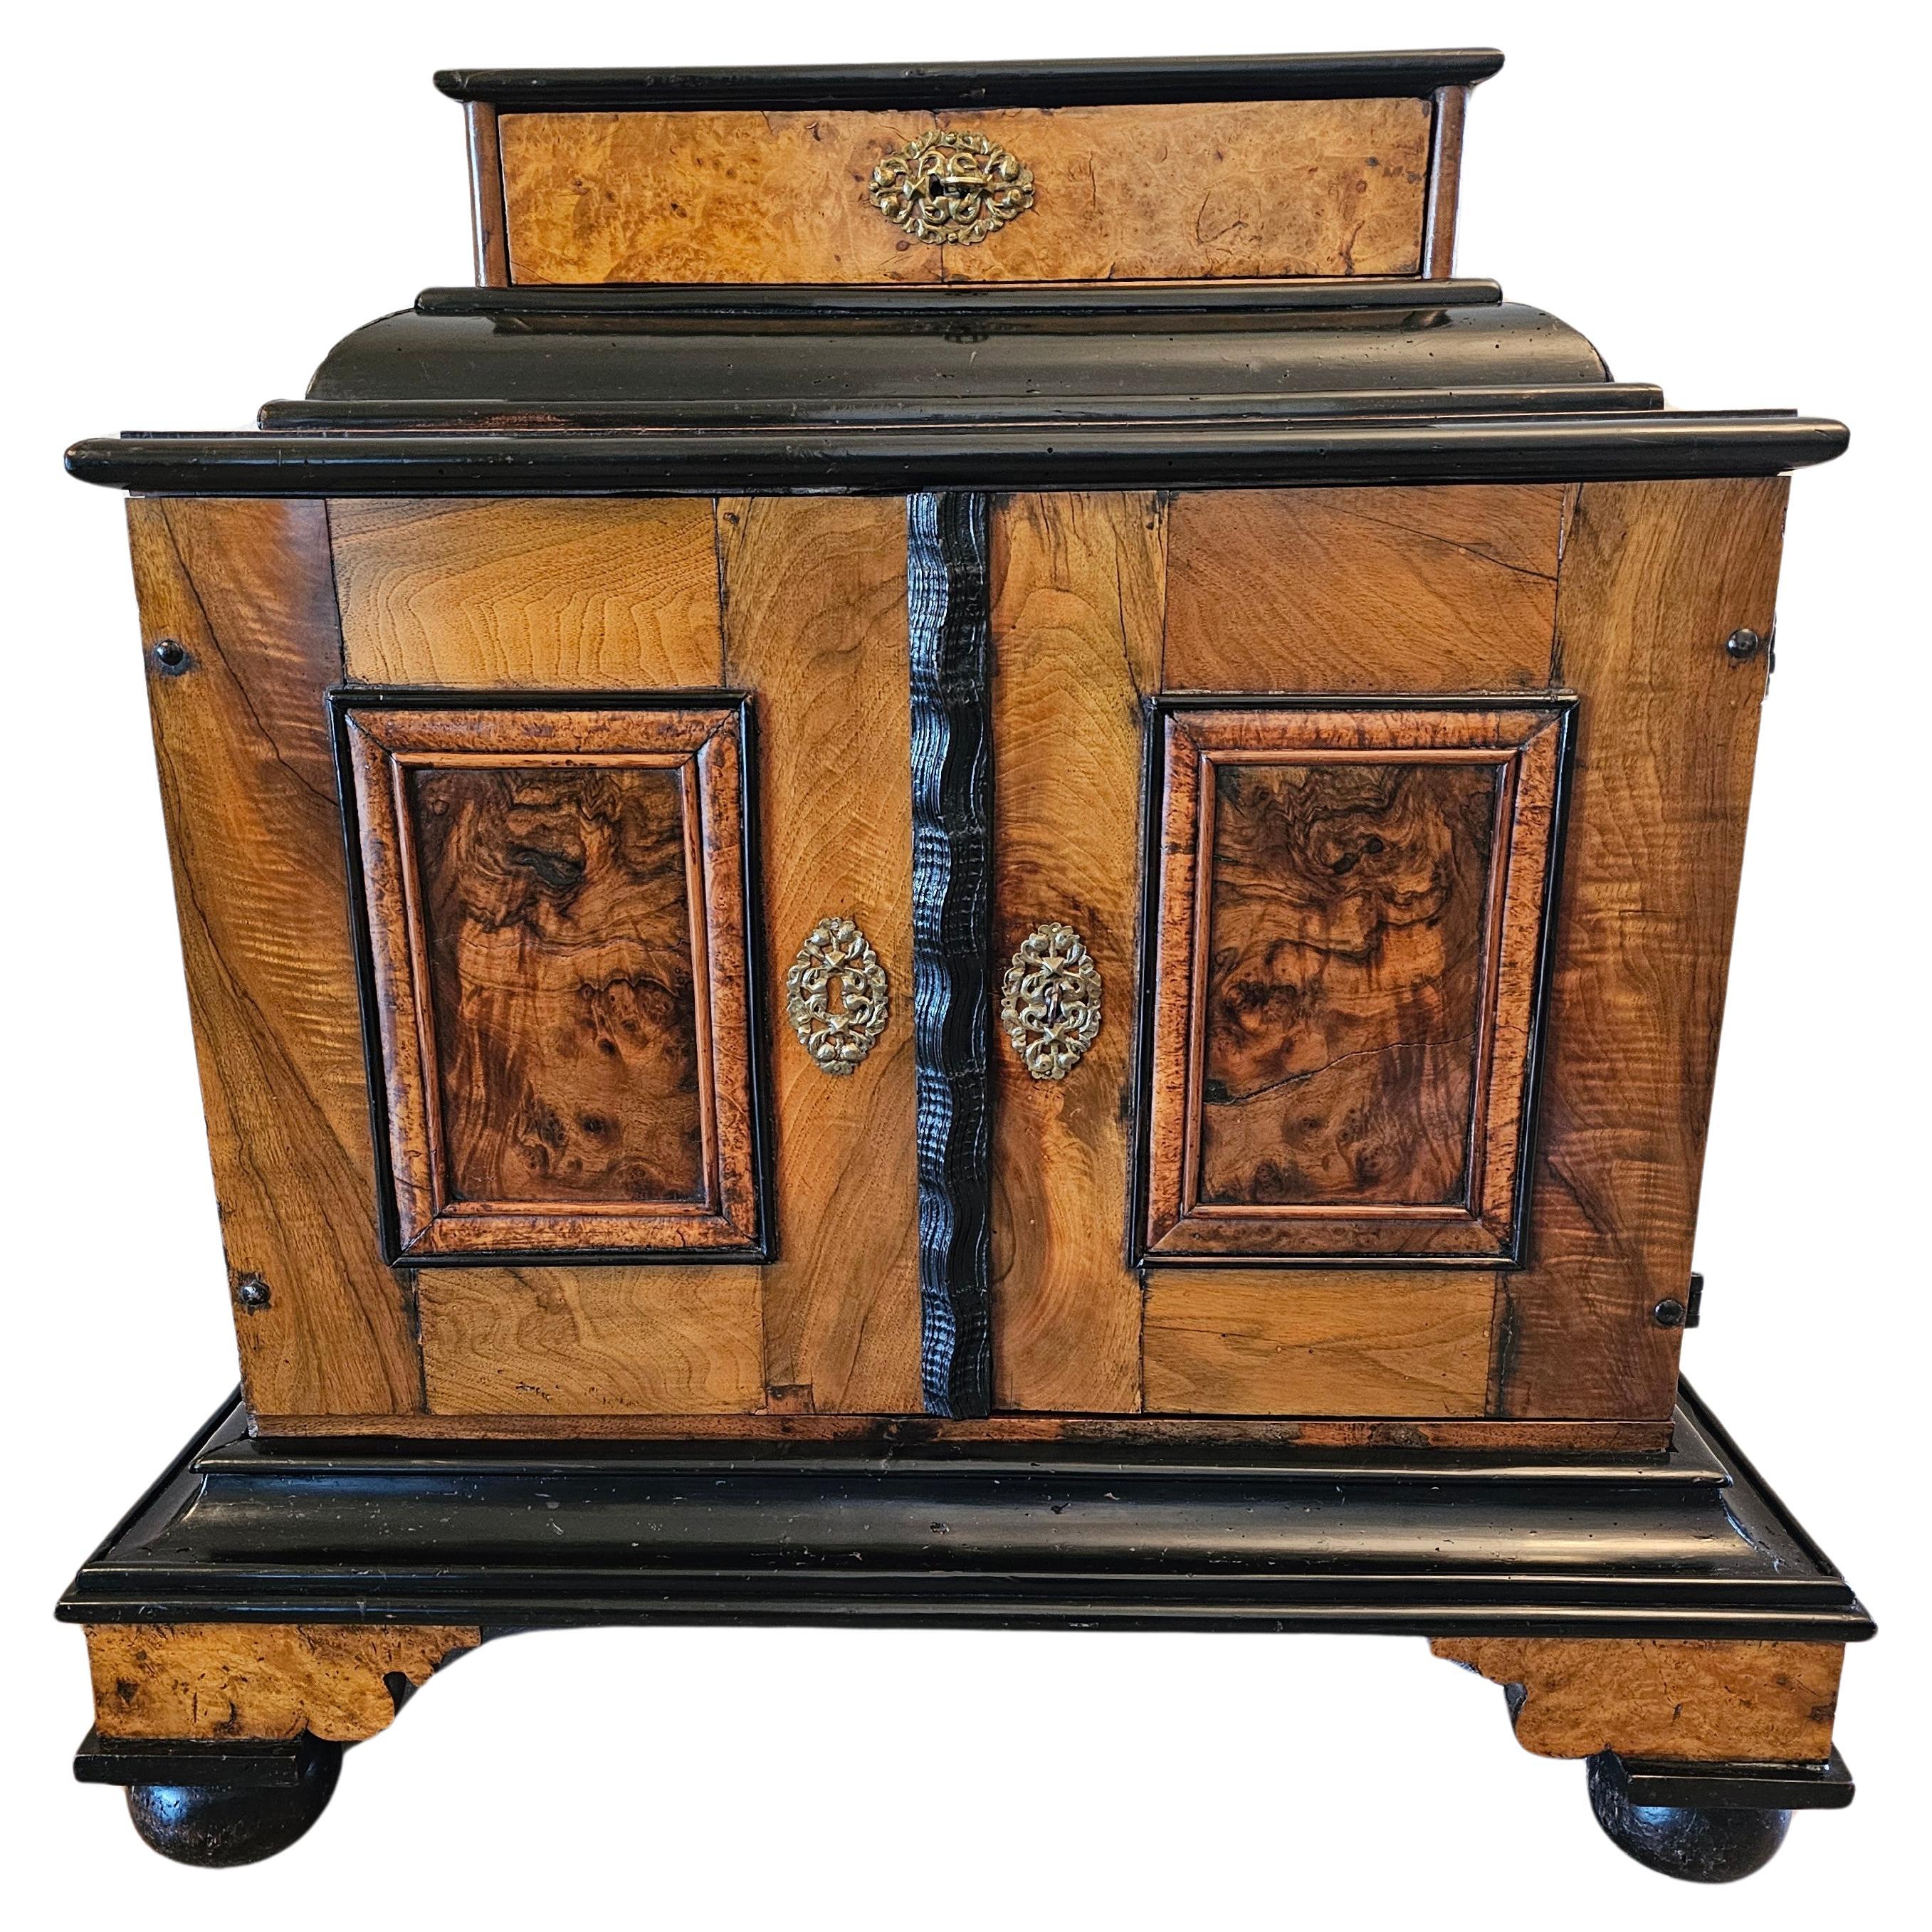 Un beau cabinet de table - wunderkammer (cabinet de curiosités) de la période Biedermeier (1815-1848) en marqueterie de noyer et d'érable, avec quinze tiroirs et des compartiments secrets dissimulés, vers 1820. 

Ce cabinet de curiosités